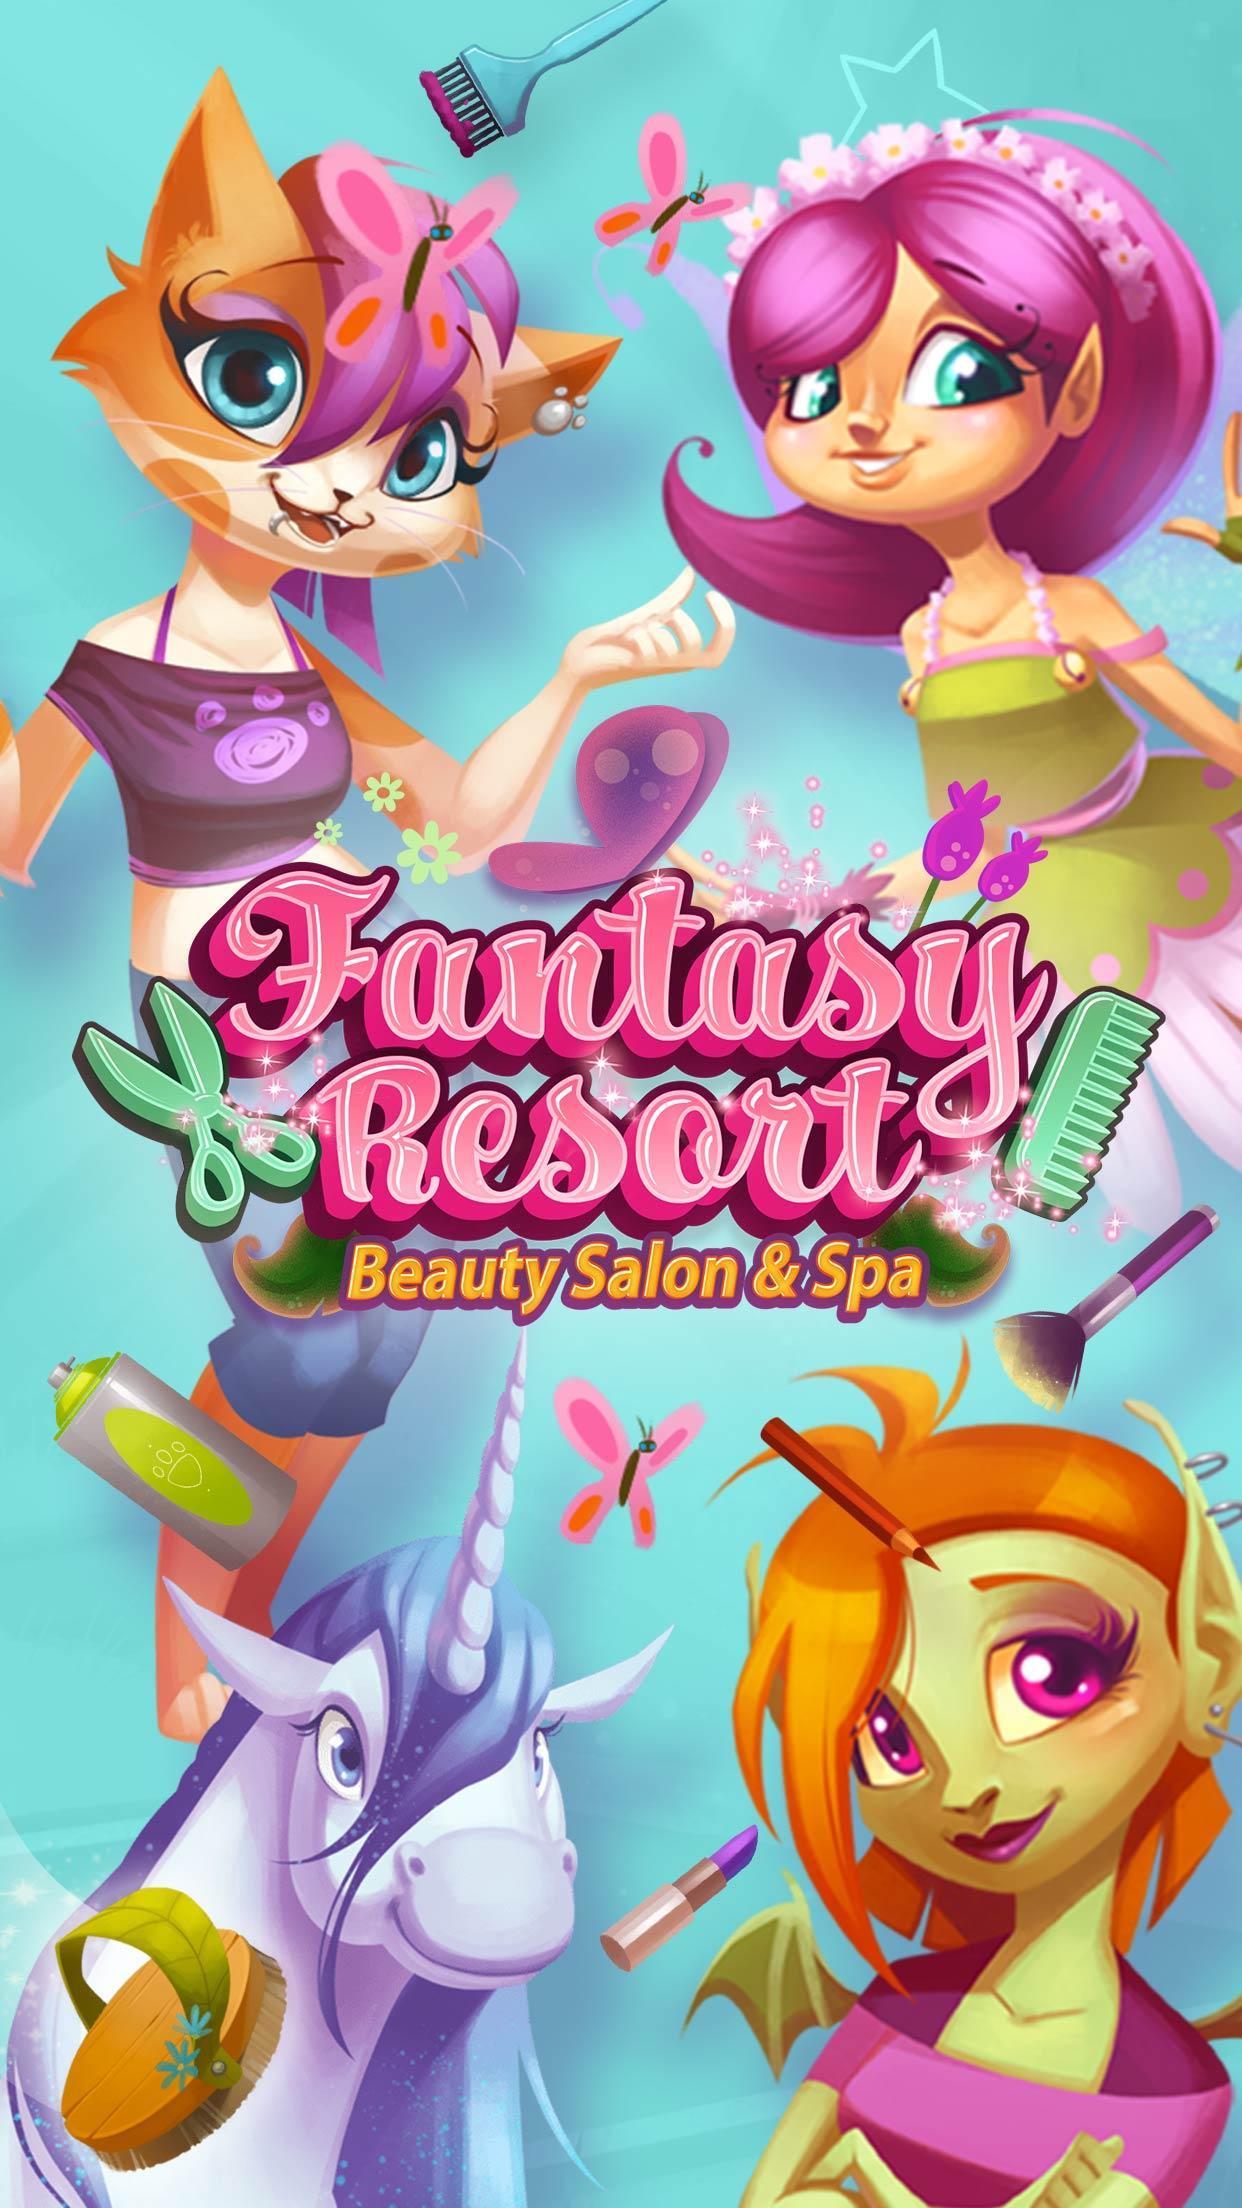 Screenshot 1 of Fantasy Village Resort - Spa, Haare, Make-up und Bad 1.0.39